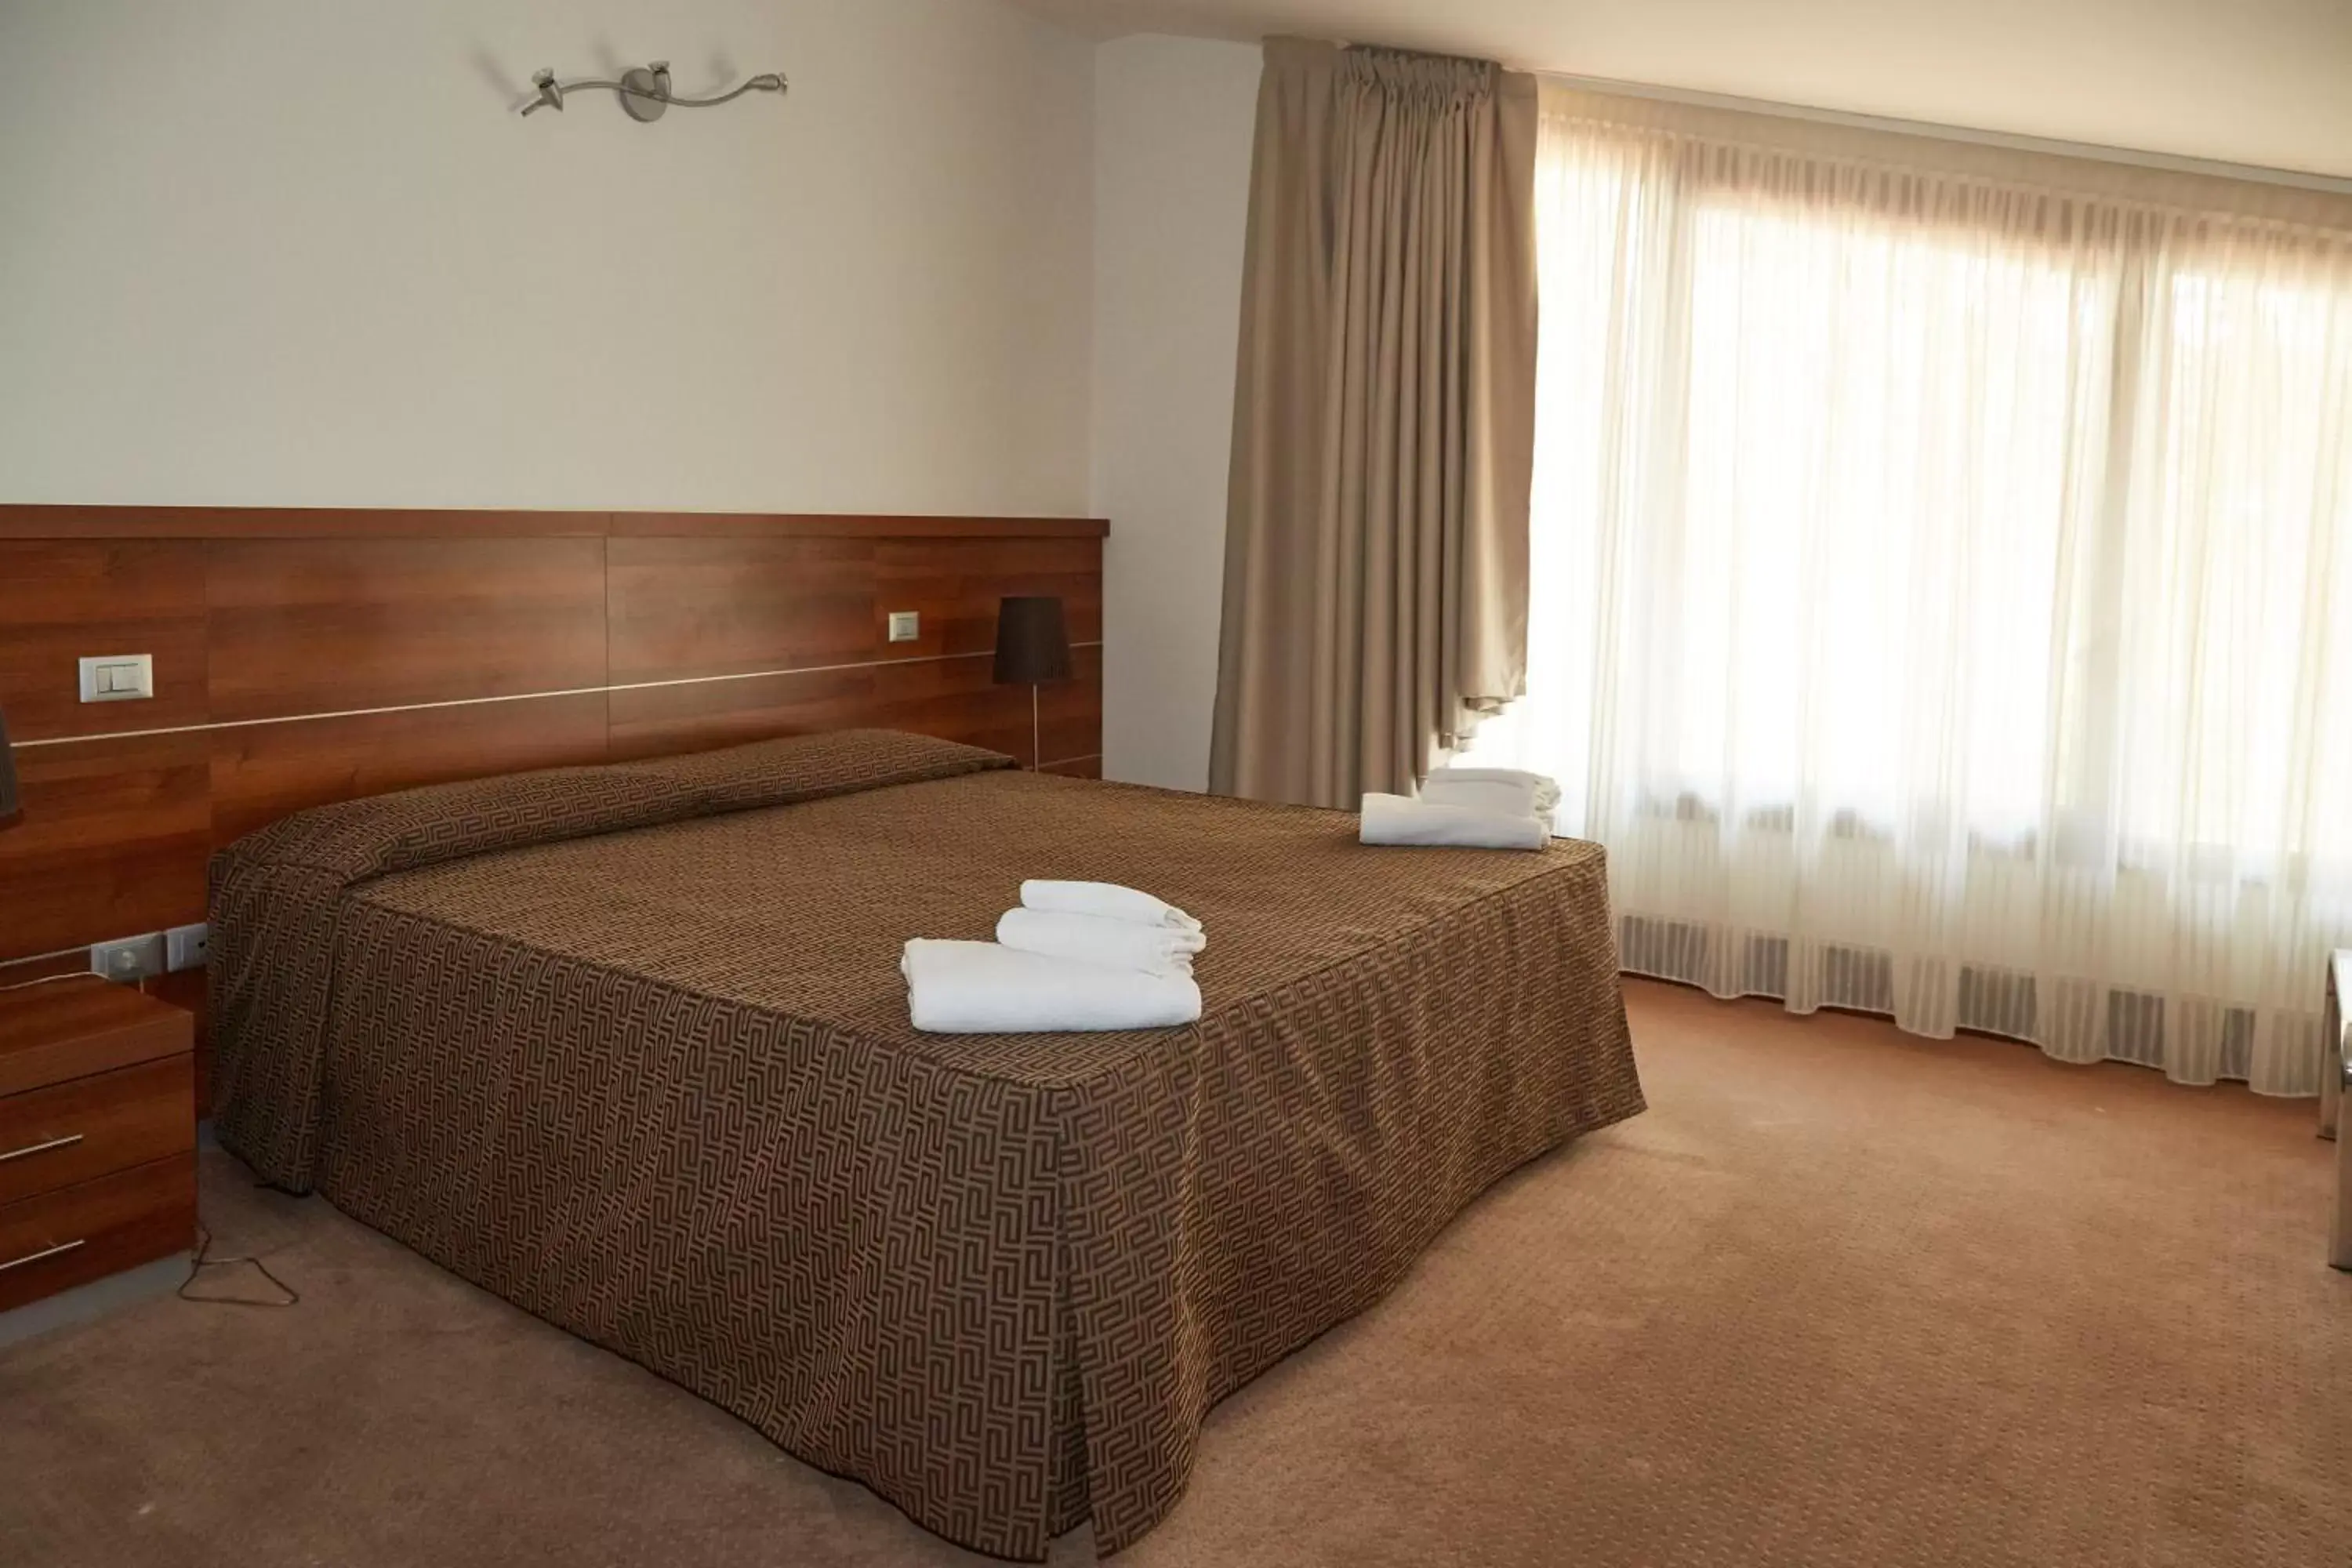 Bed in GREEN GARDEN Resort - Smart Hotel